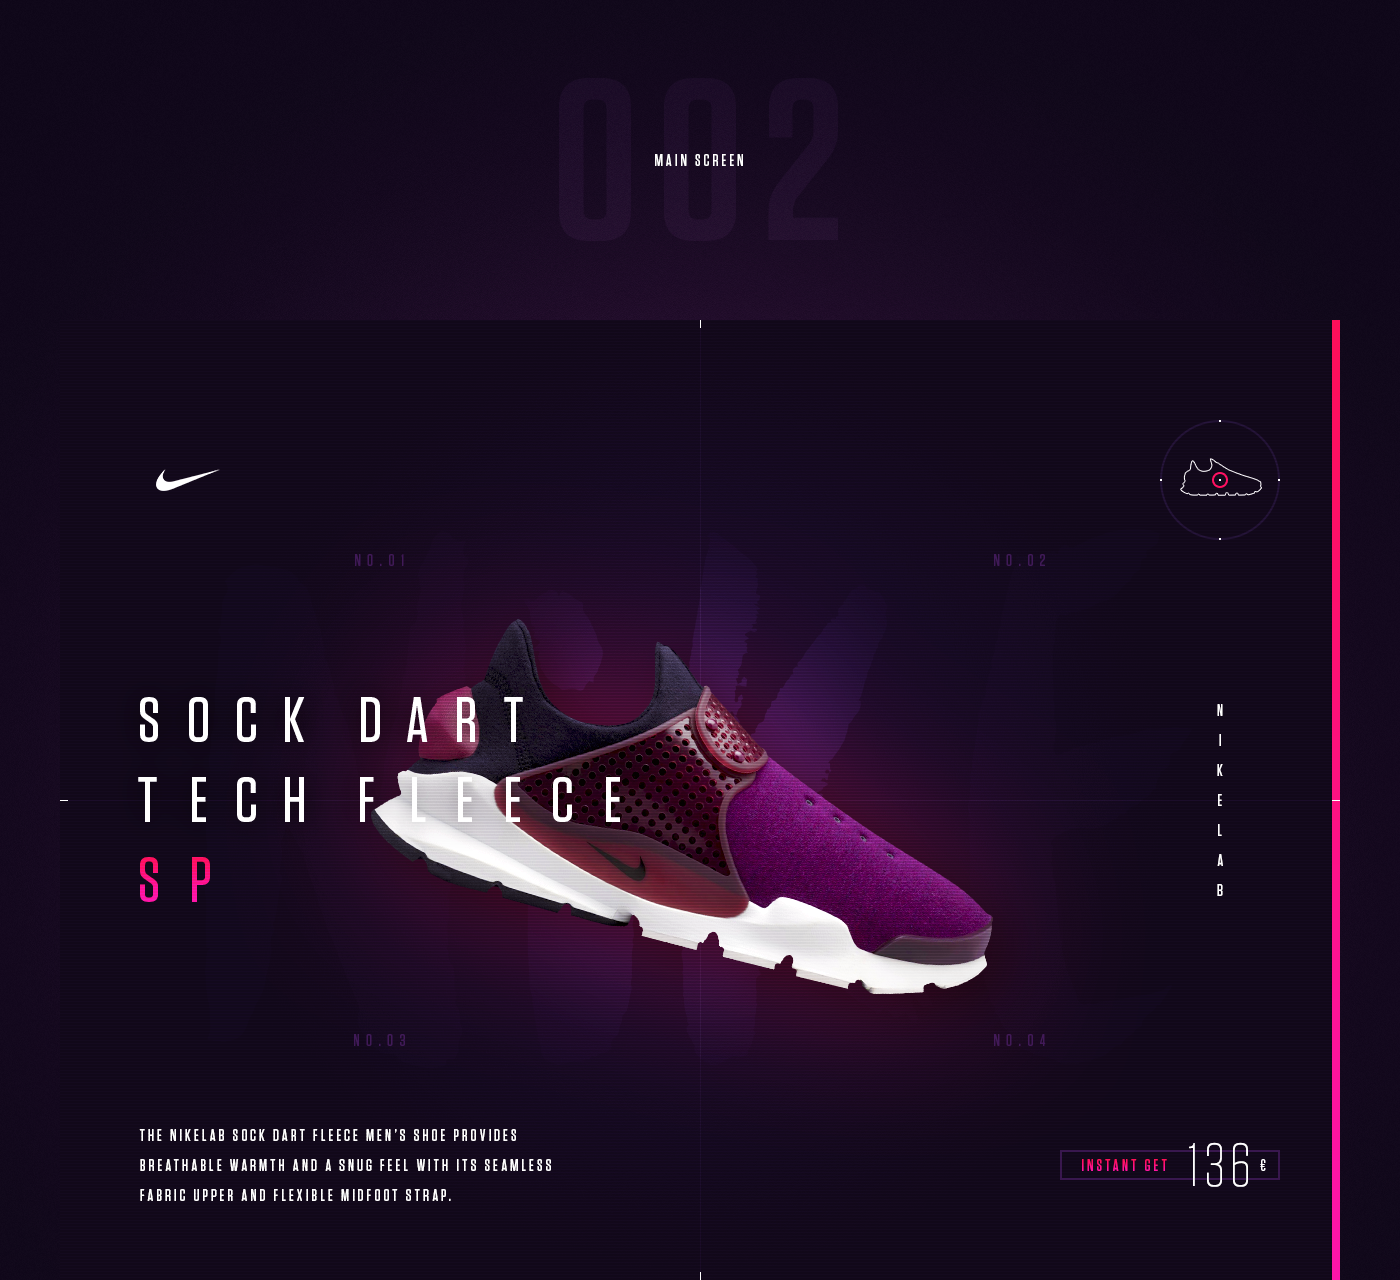 Nike nikelab Sock Dart Fleece Men's shoe mulberry shoe sport futuristic microsite Web Website site footwear hellowiktor